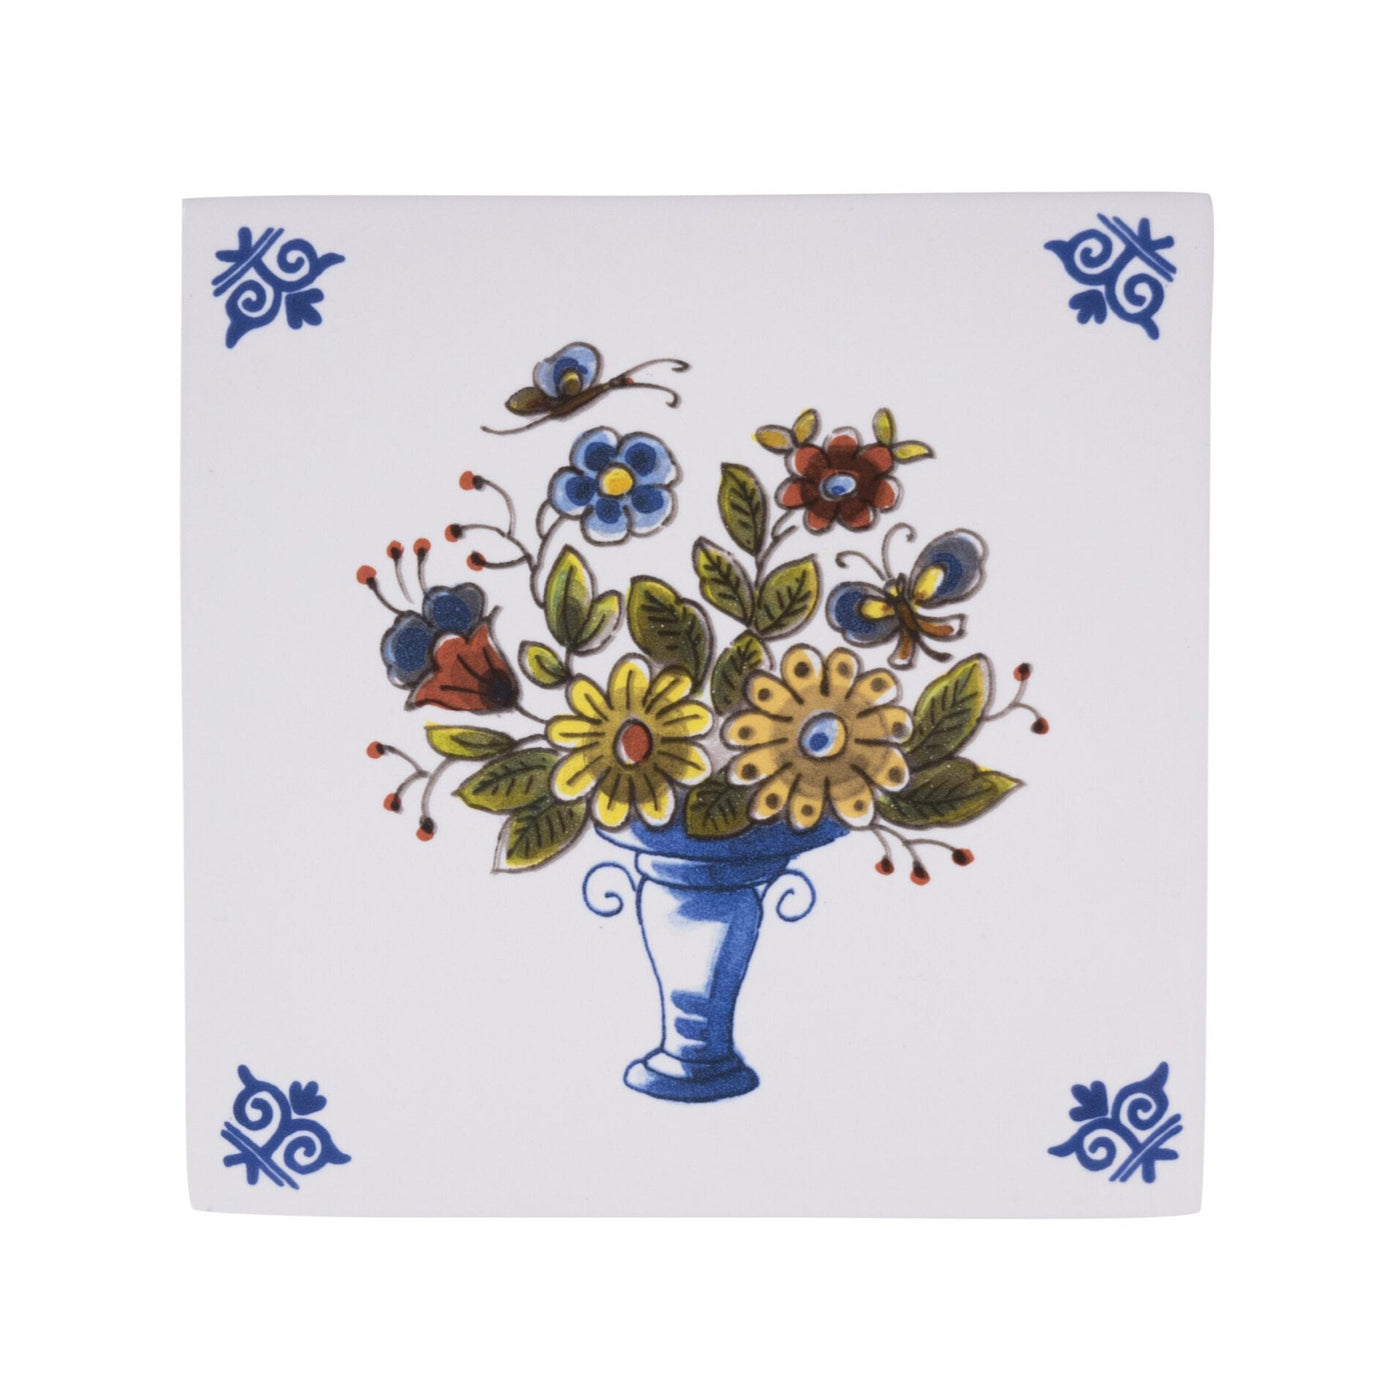 Tile Flower Basket (805) Delft Polychrome by Royal Delft